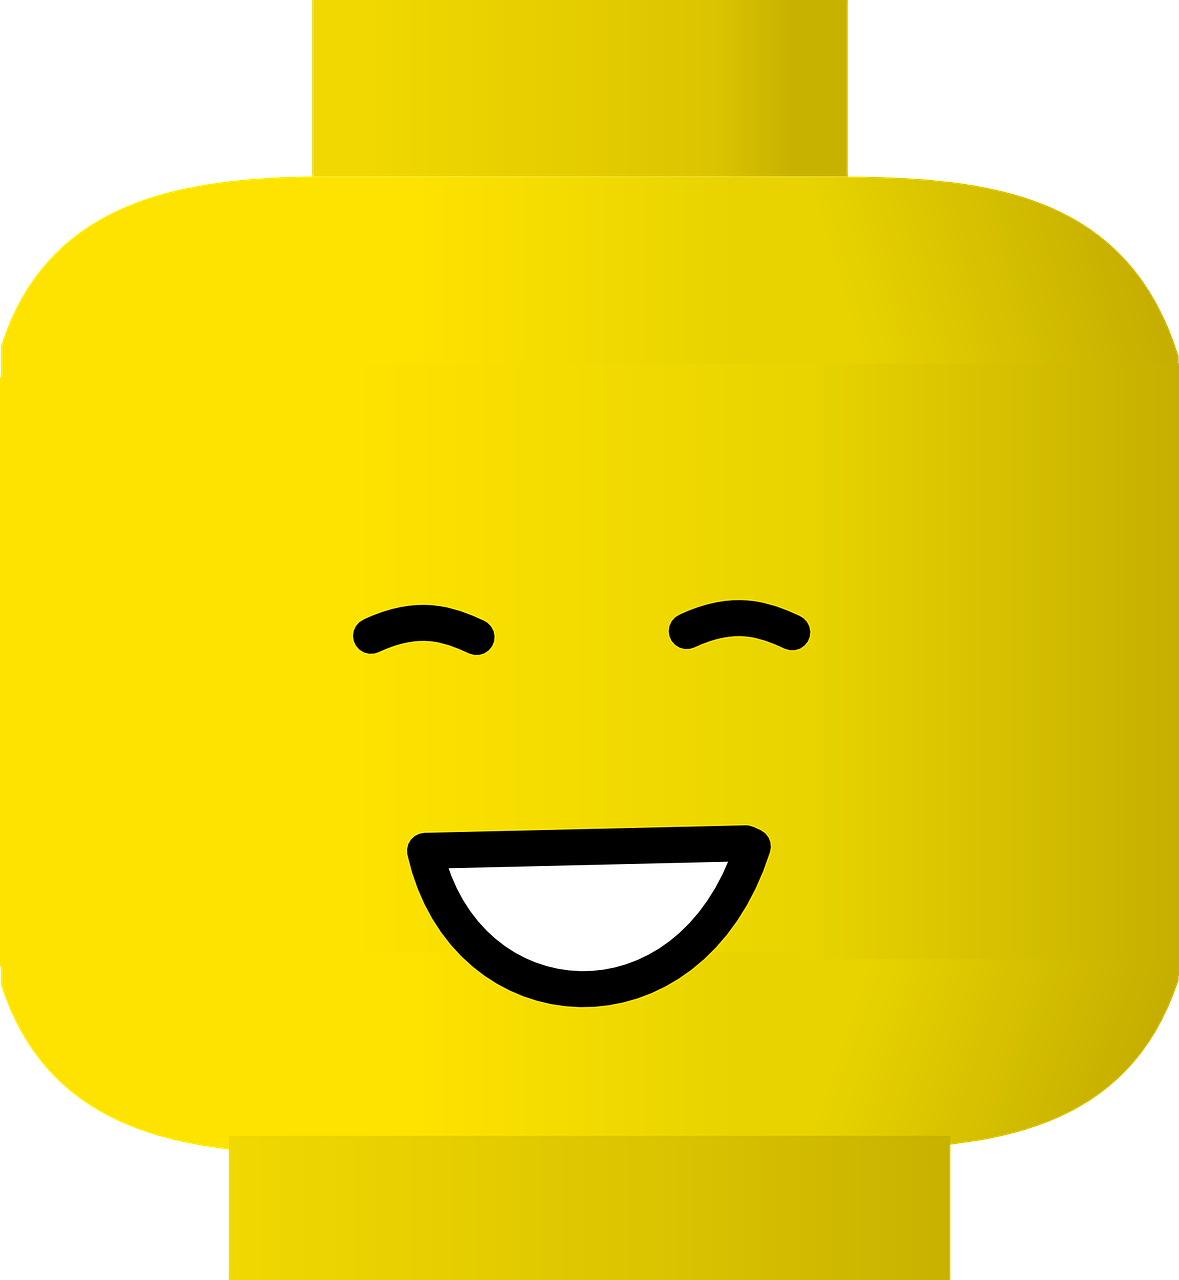 toy yellow smiley free photo